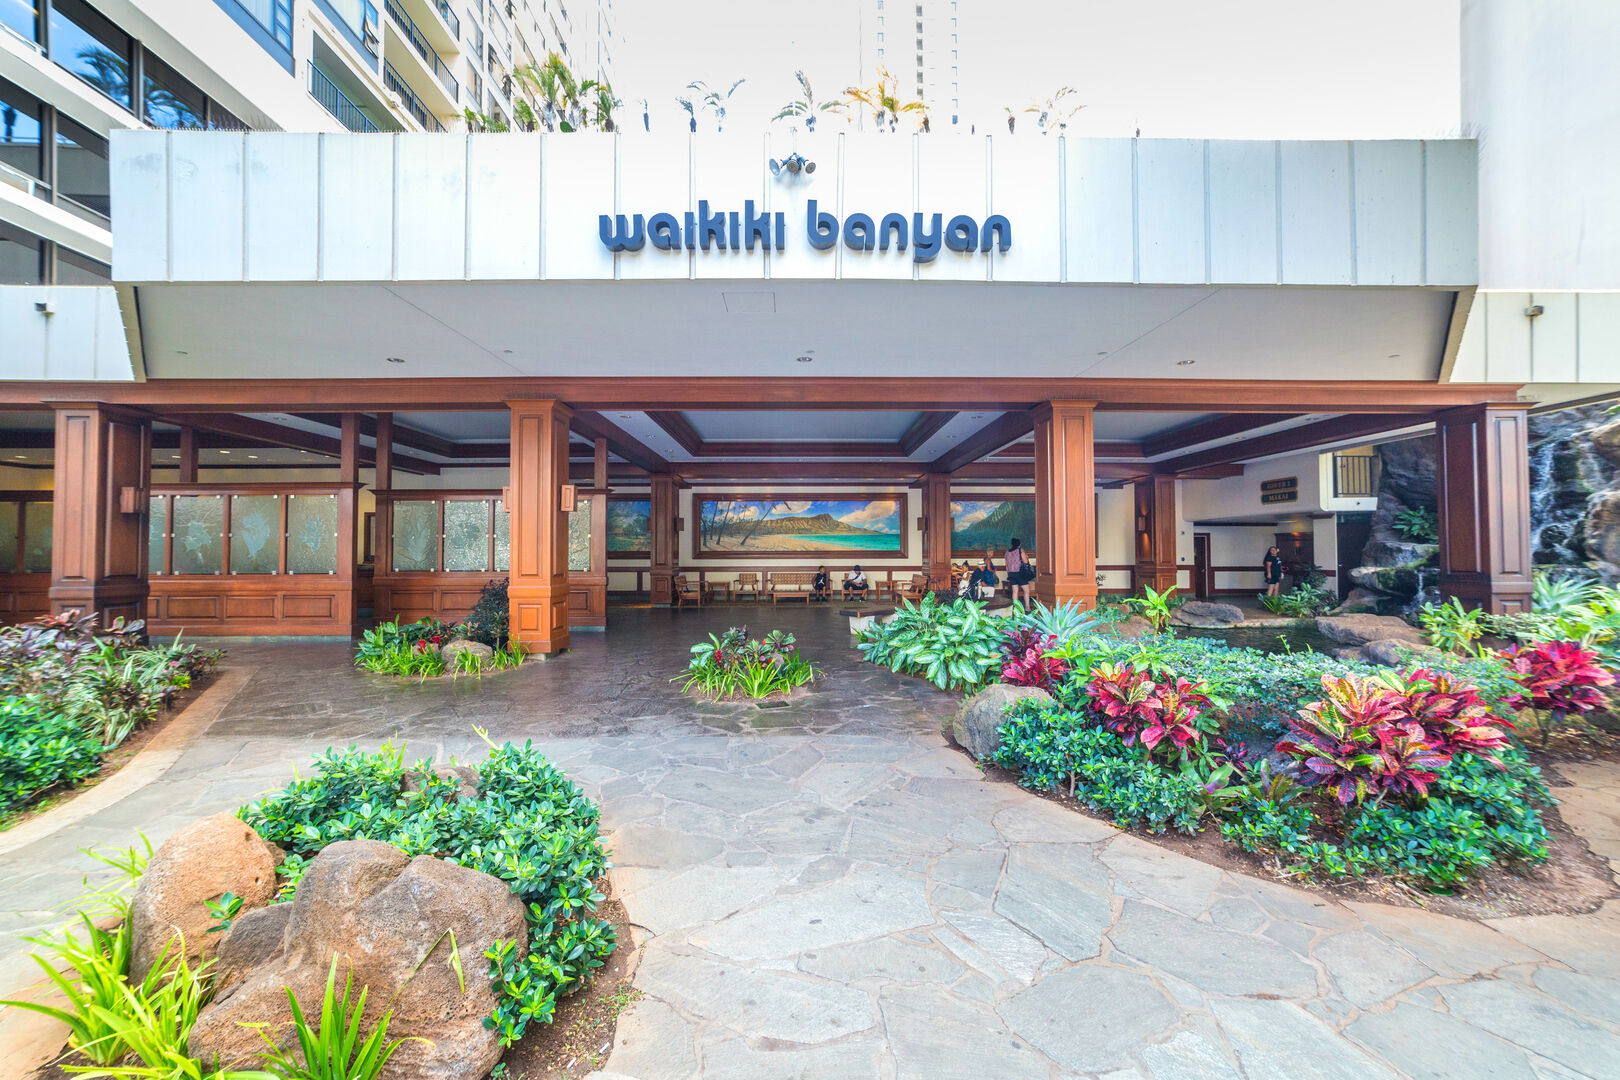 Waikiki Banyan